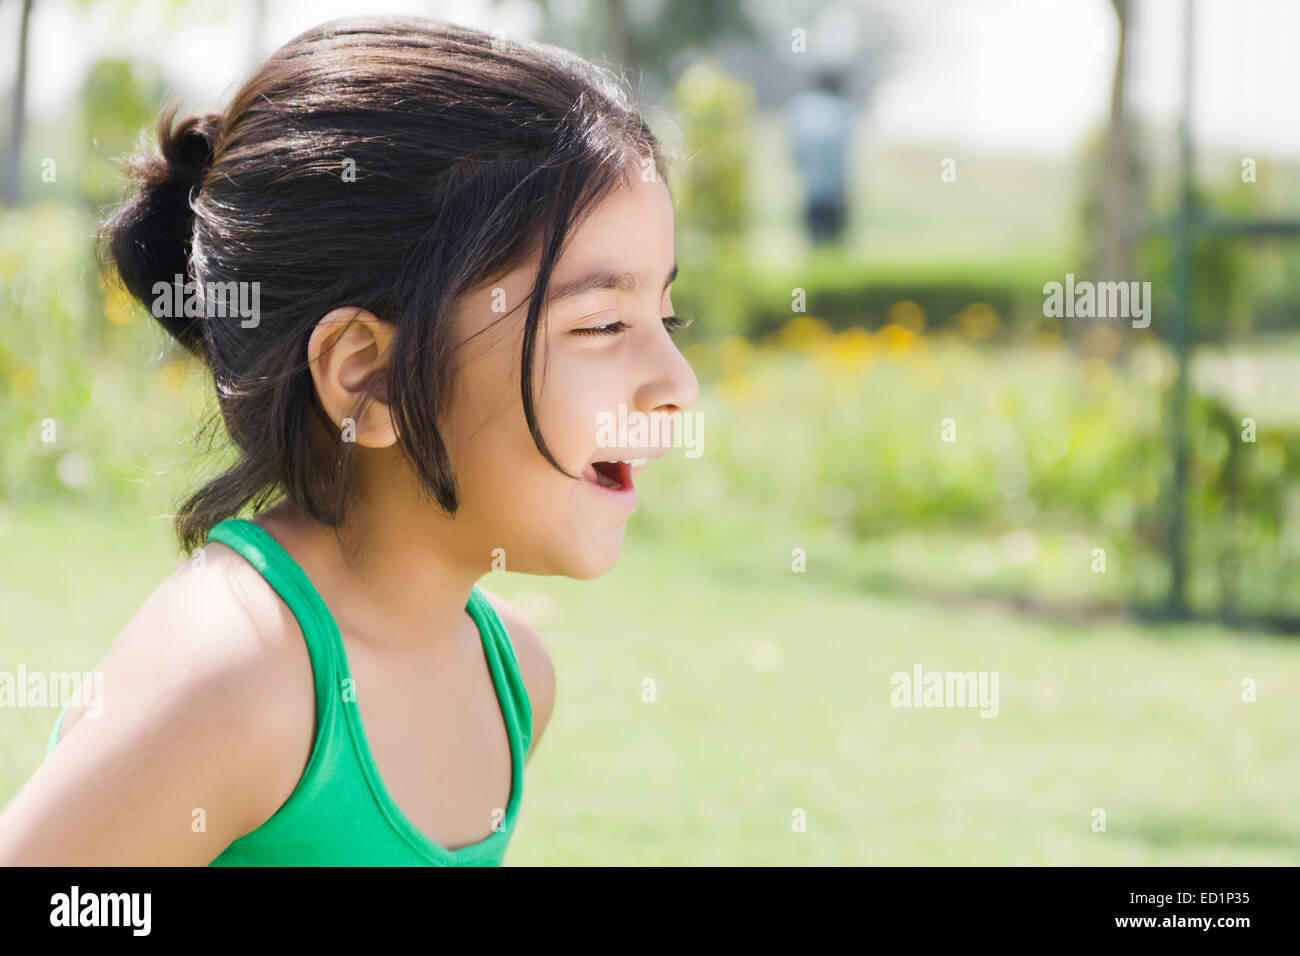 Ich Inder schönes Kind Mädchen Park zu genießen Stockfoto